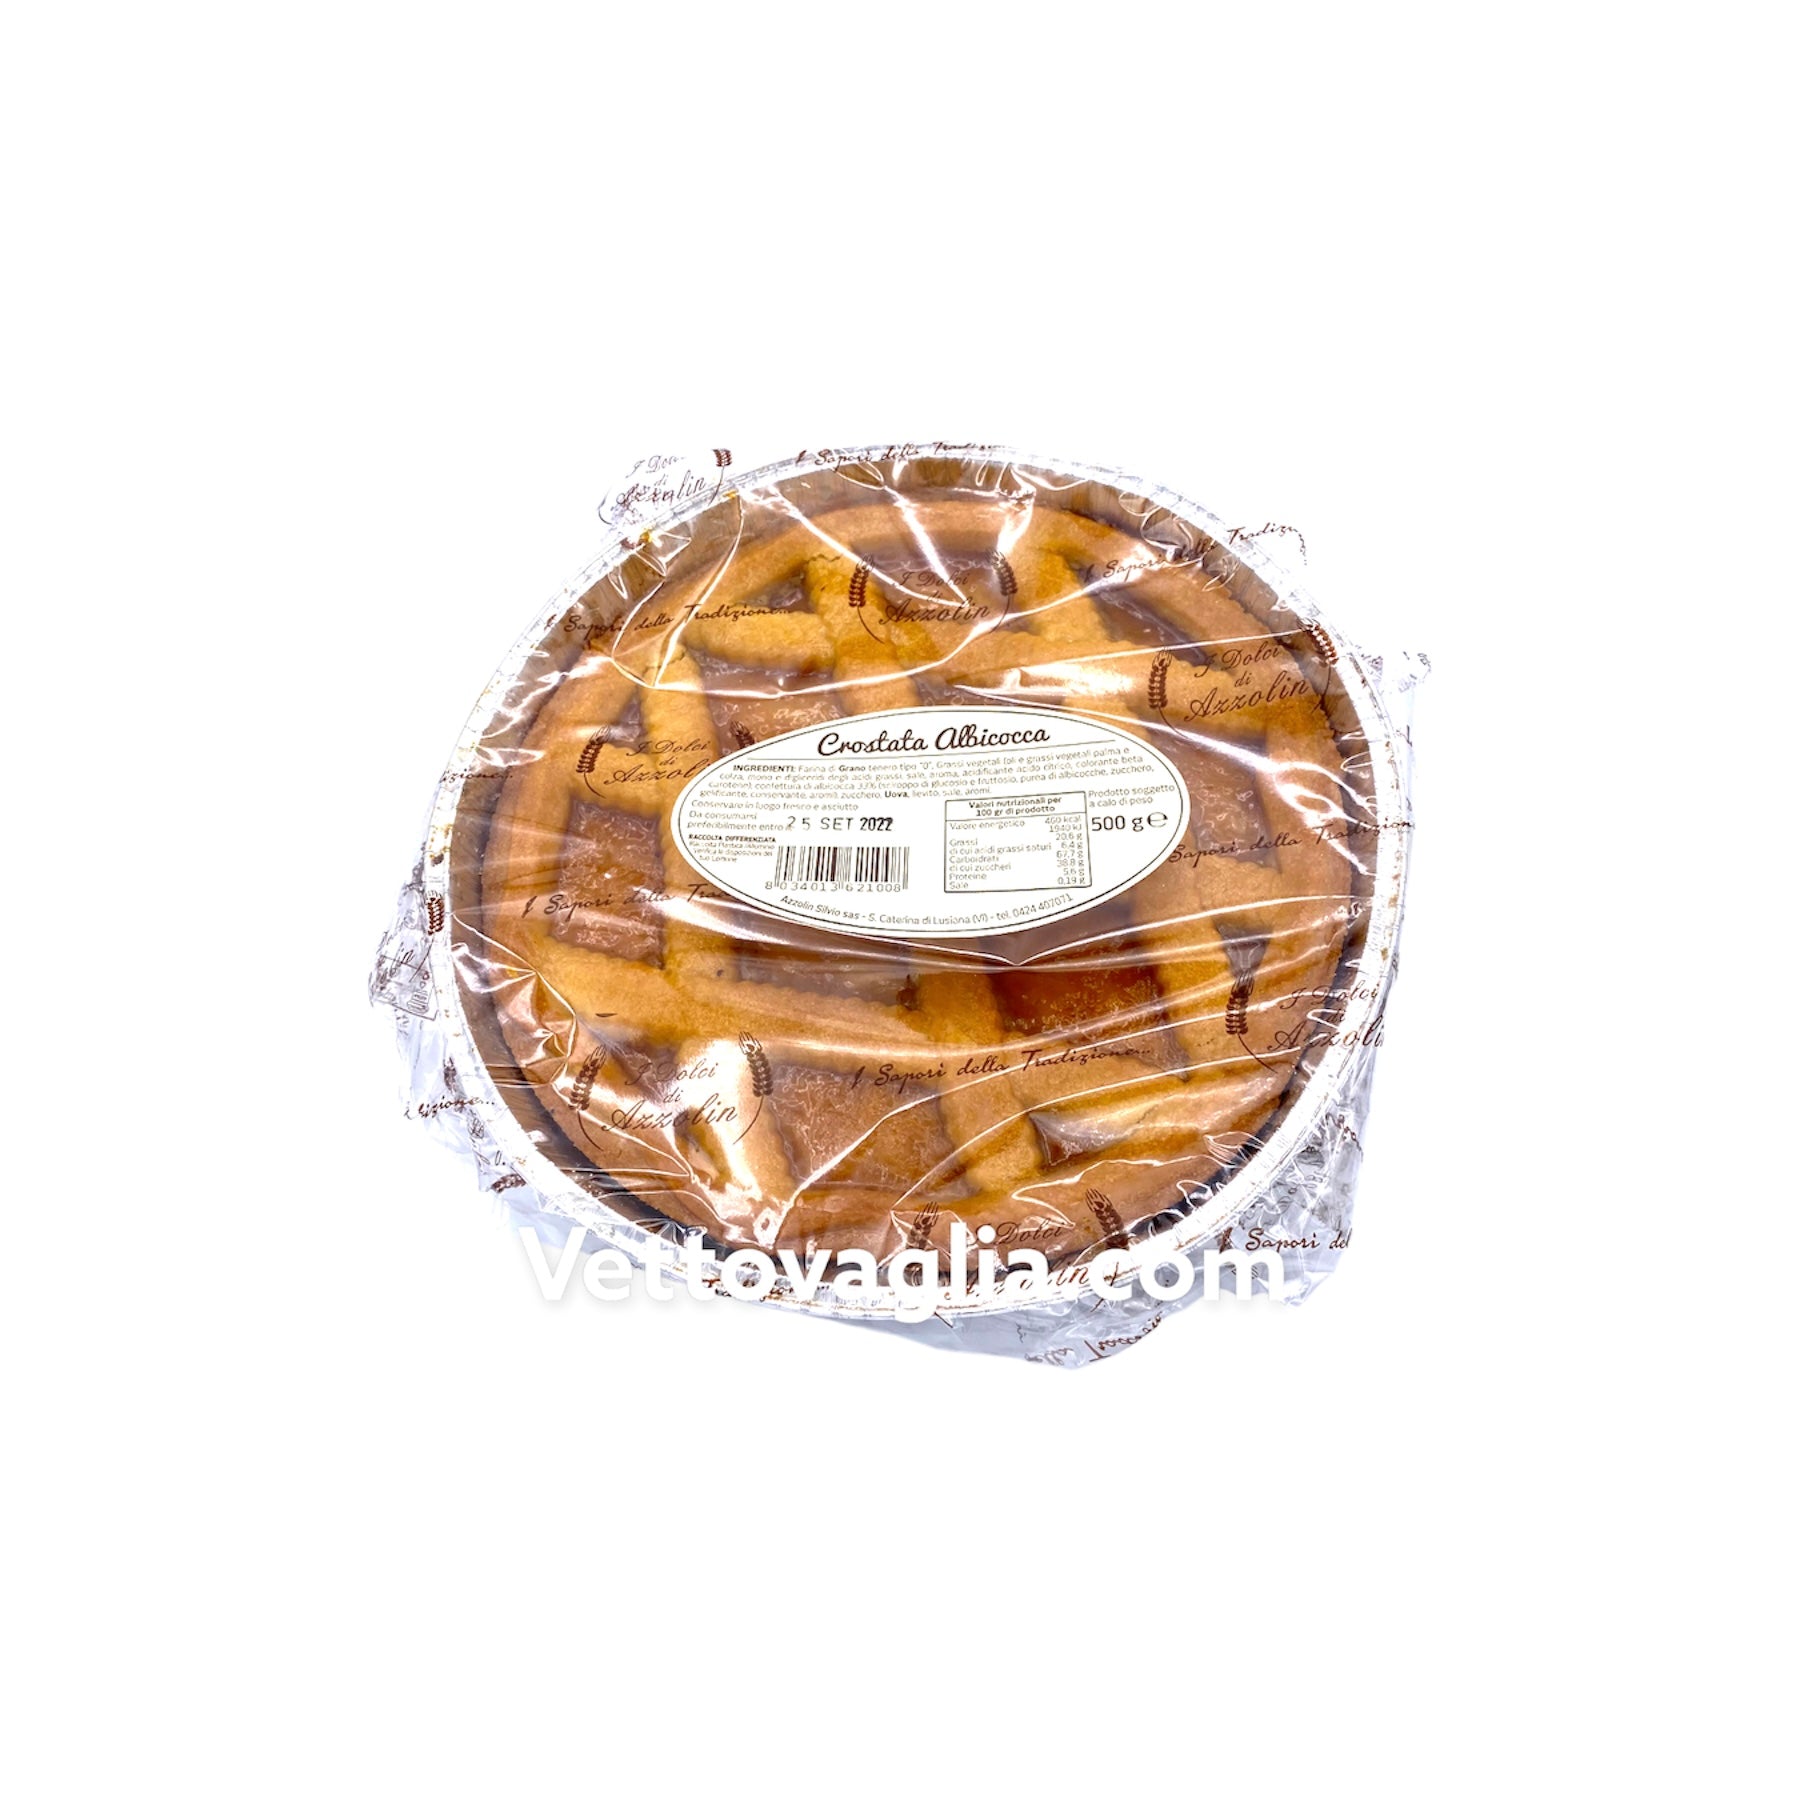 Le crostate I dolci di Azzolin - Vettovaglia.com